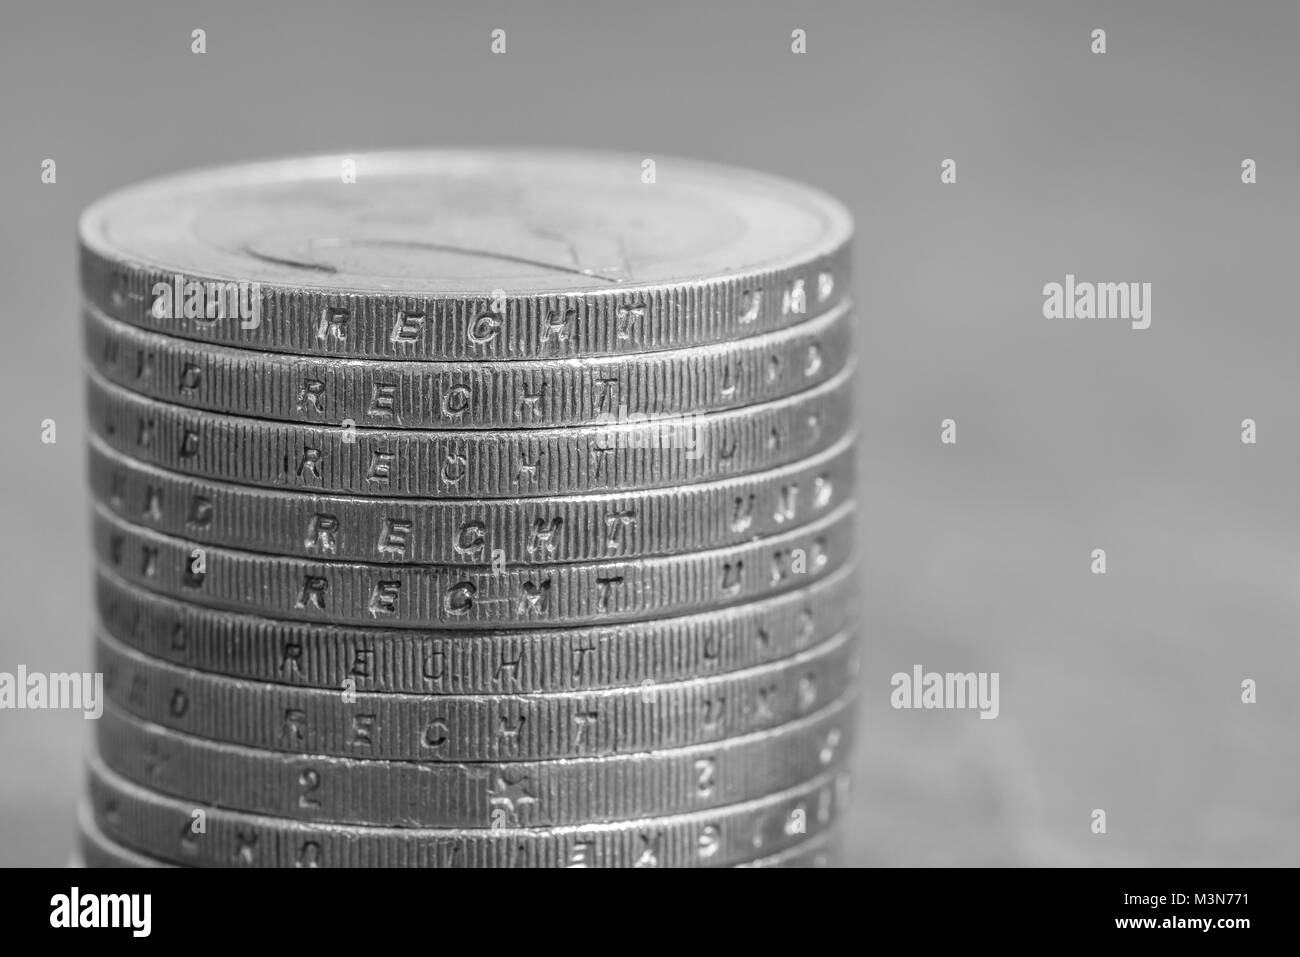 Les pièces en euros empilés avec le mot allemand - Droit Banque D'Images